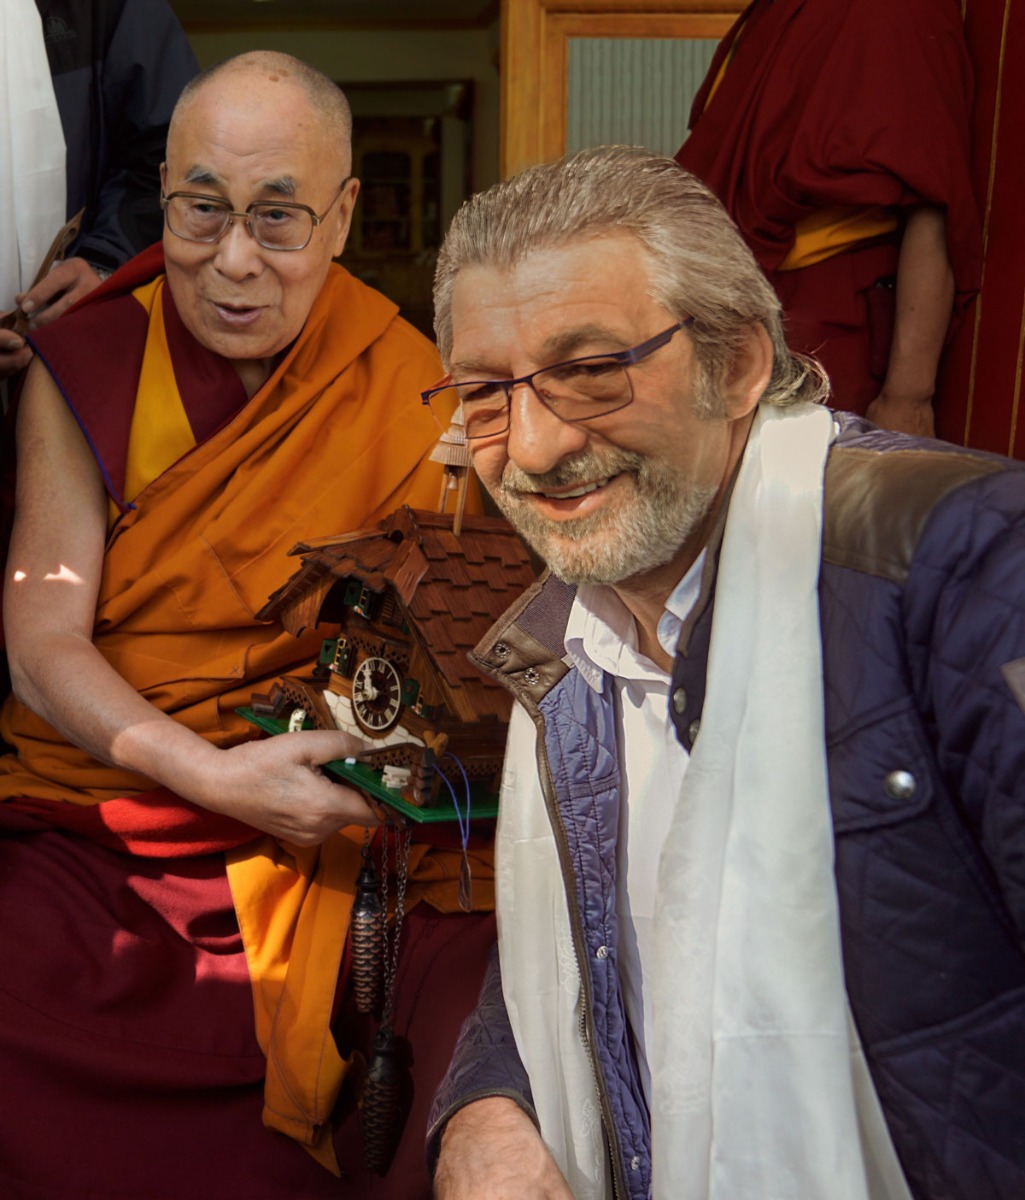 Audienz beim Dalai Lama: Otmar Knoll mit dem geistlichen Oberhaupt der Tibeter.